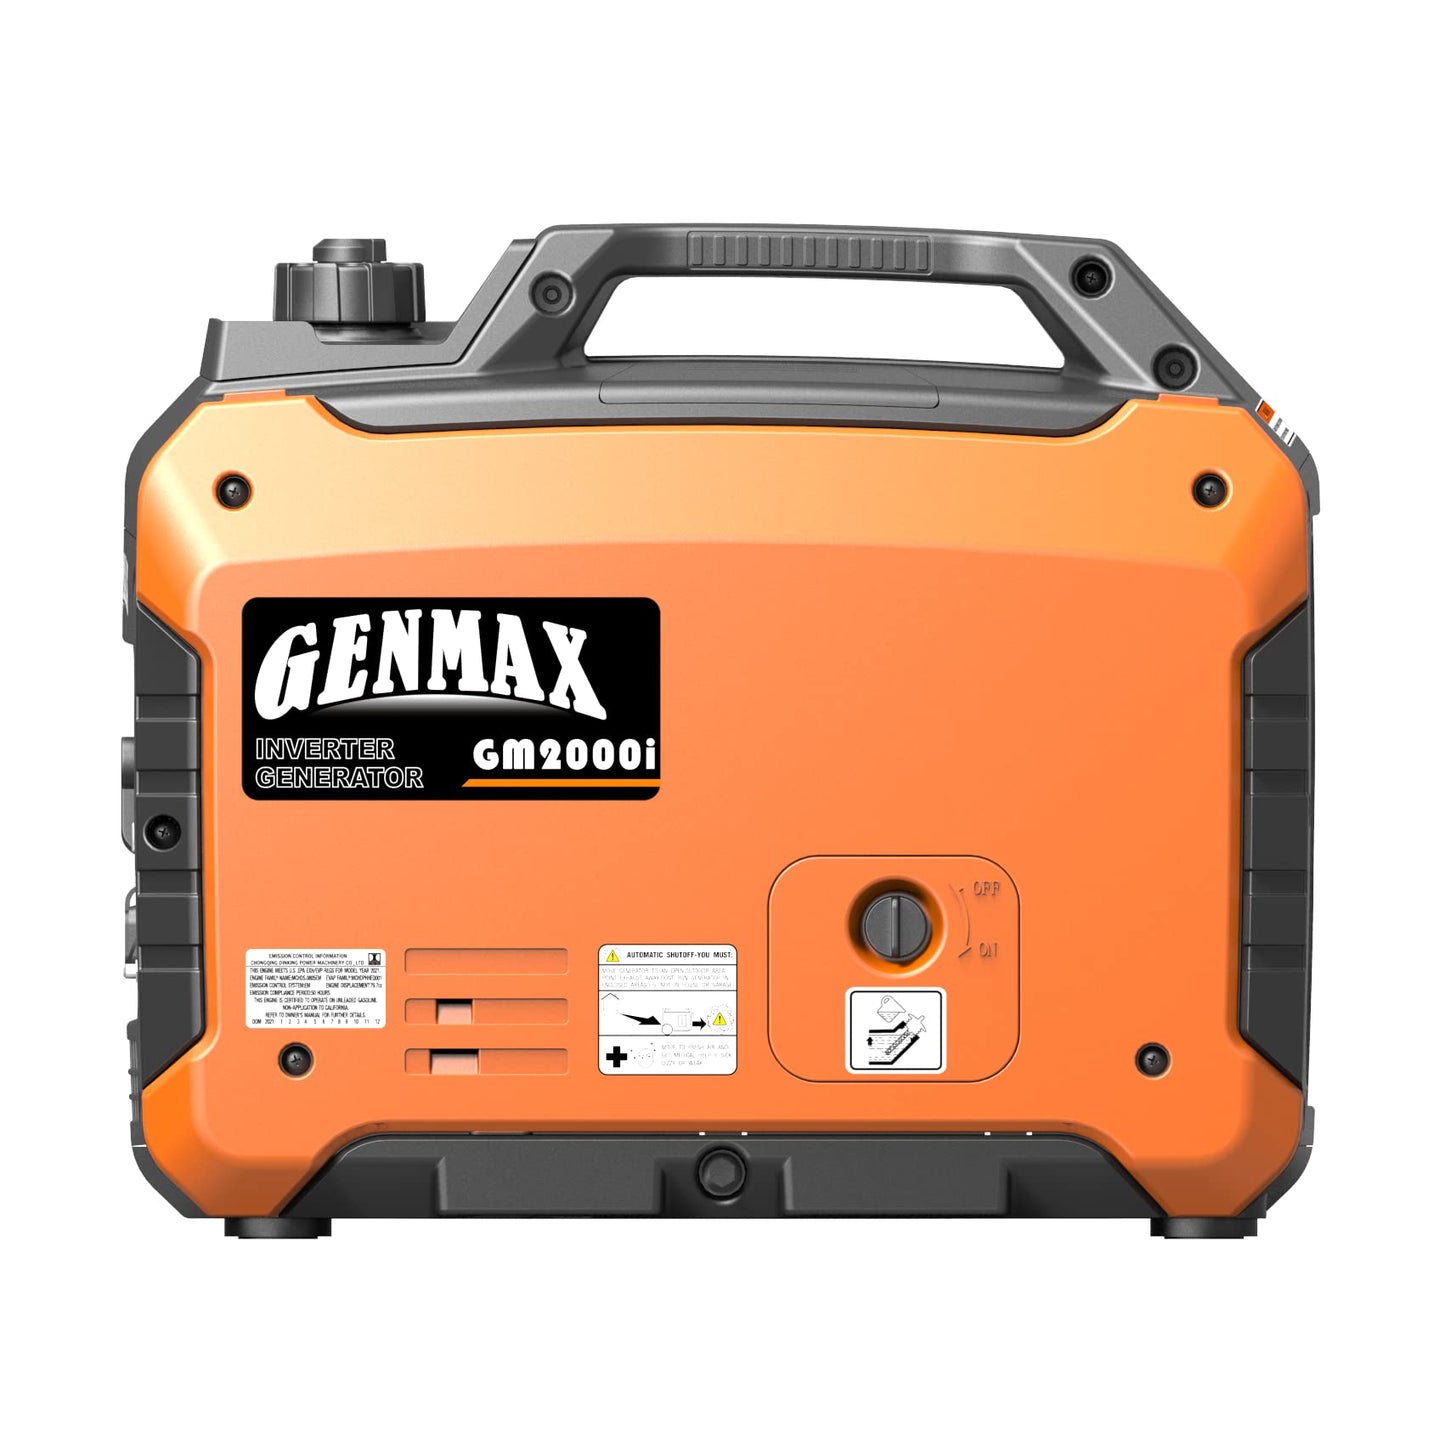 Générateur à onduleur portable GENMAX GM2000i, moteur à essence ultra silencieux de 2 000 W, conforme à l'EPA 